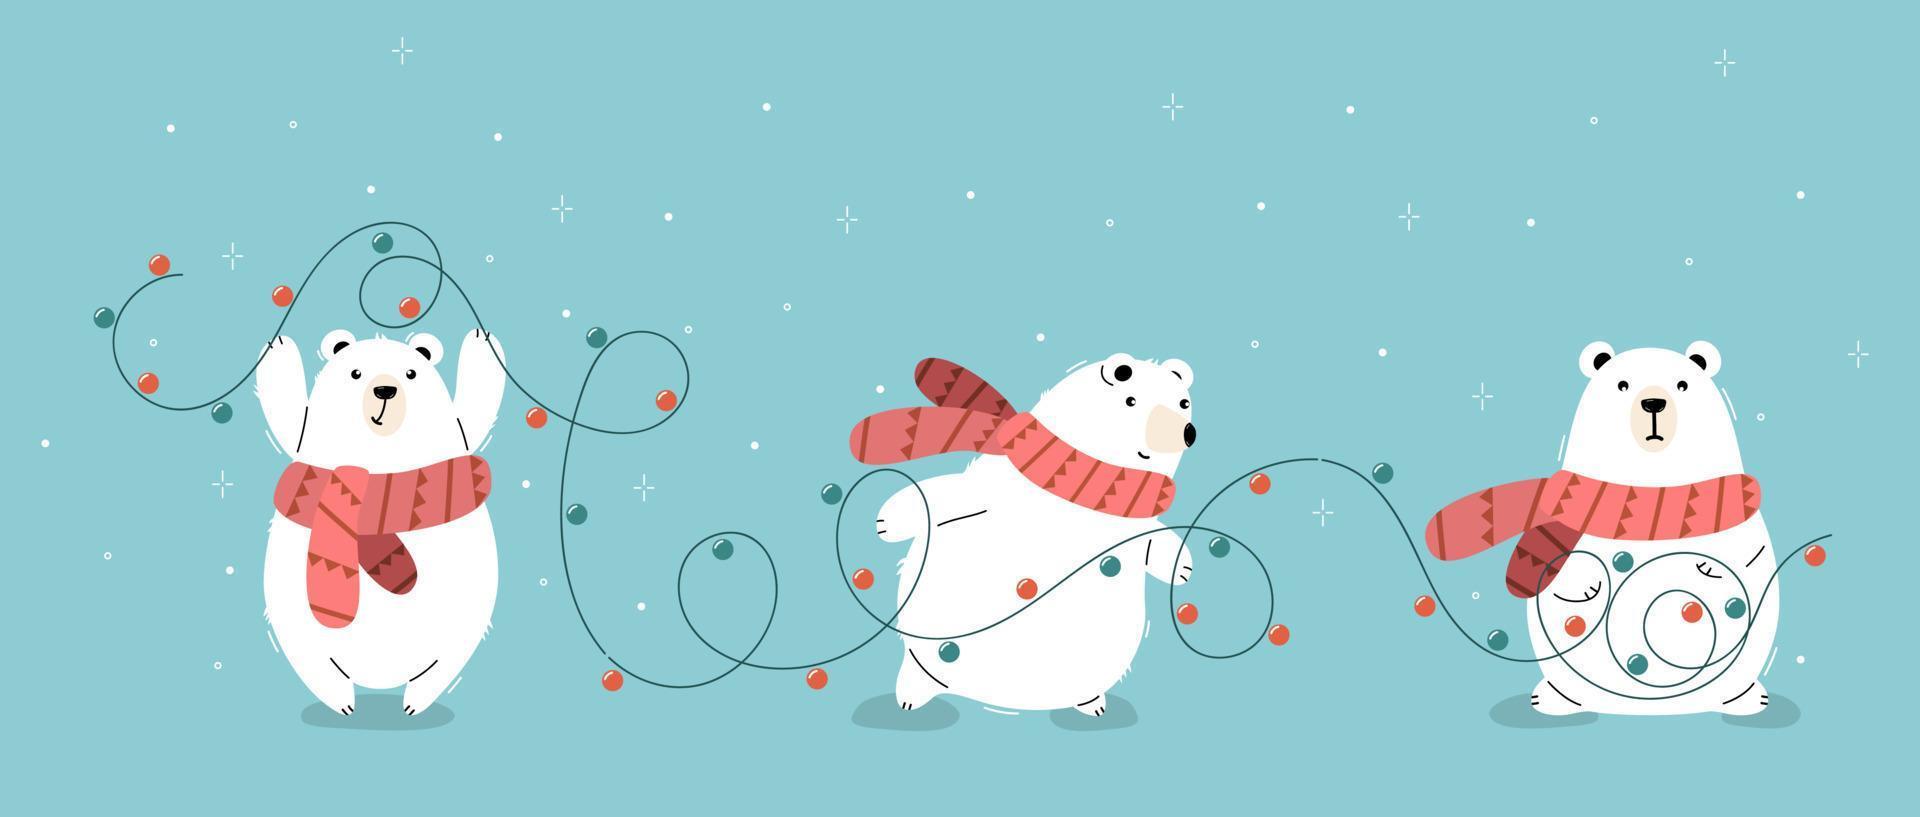 osos polares con bufandas naranjas que llevan guirnaldas para navidad. vector